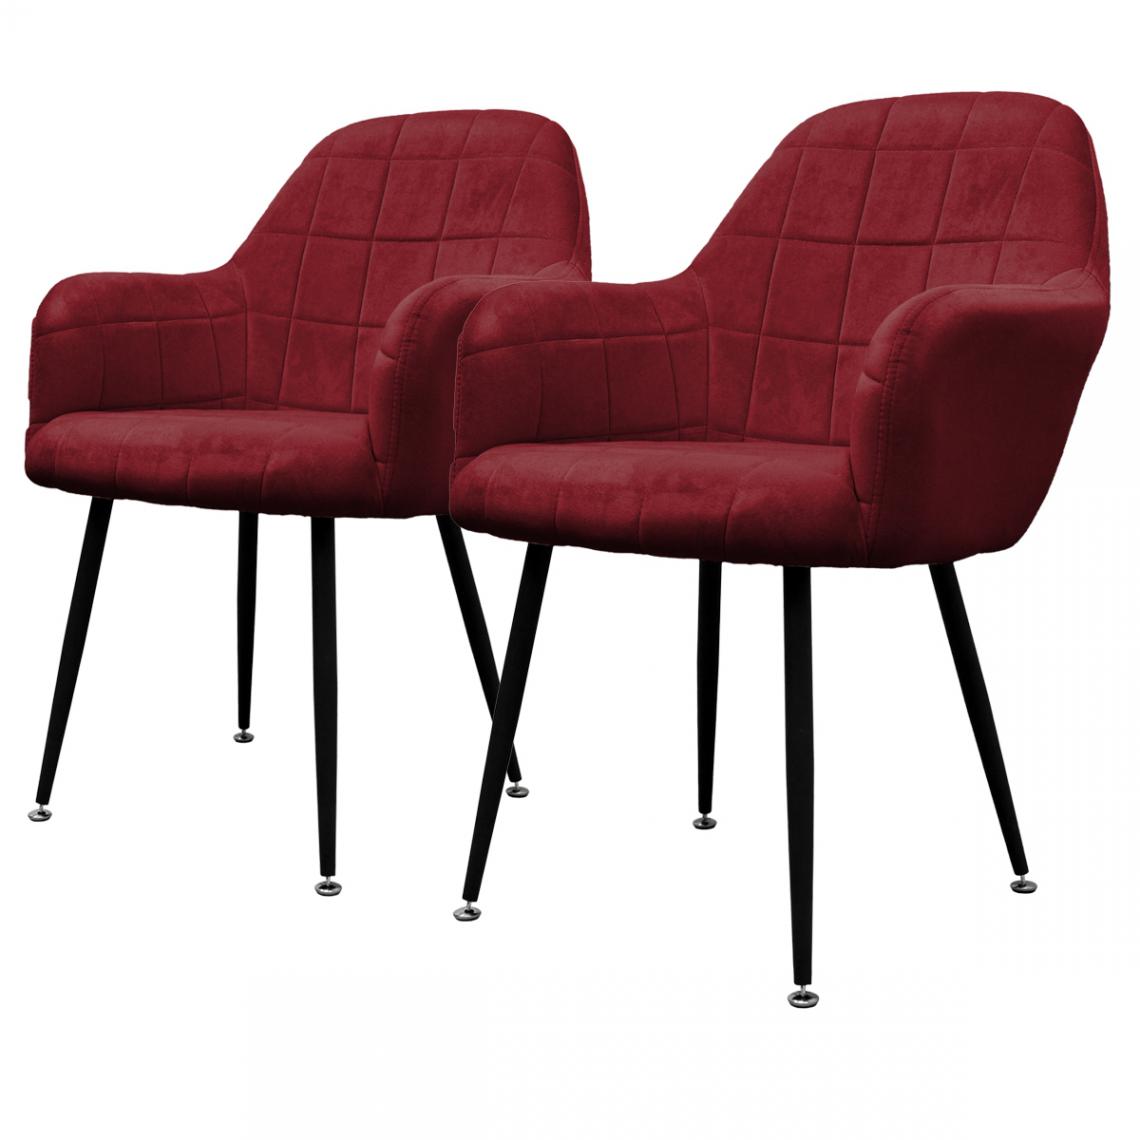 Ecd Germany - 2x Chaises de salle à manger bureau fauteuils siège bordeaux pieds métalliques - Chaises